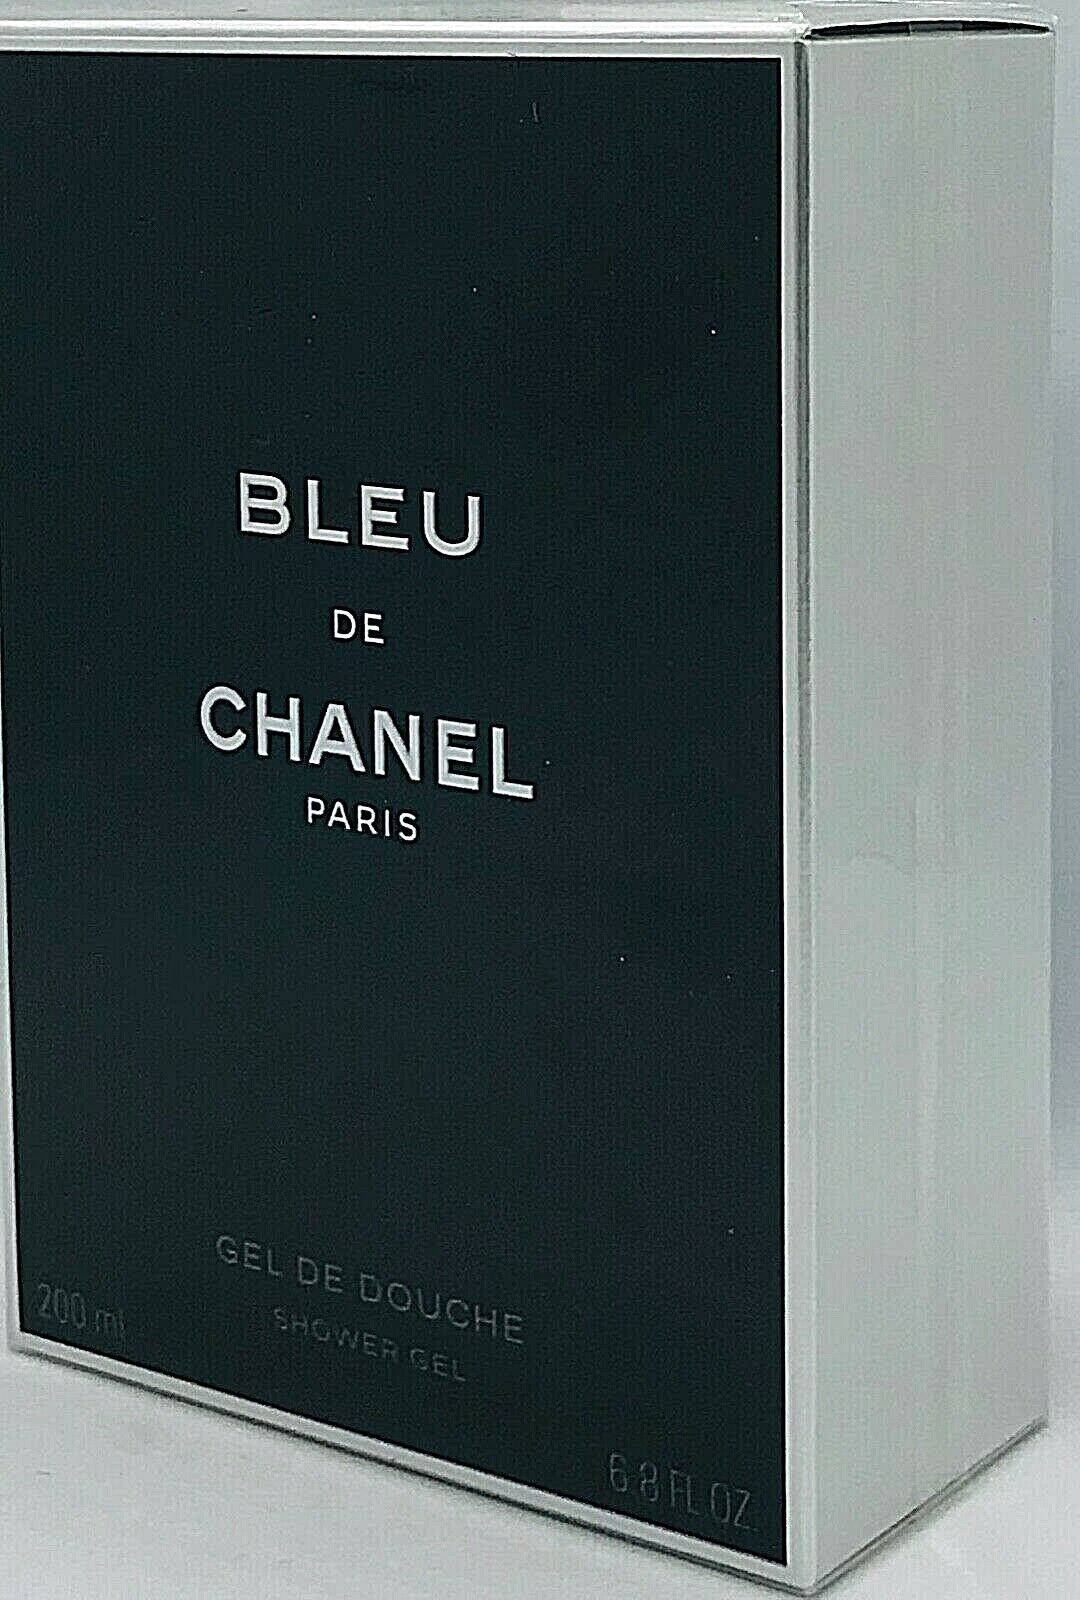 💝 CHANEL Bleu de Chanel Shower Gel / Gel de Douche 200ml OVP/NEU